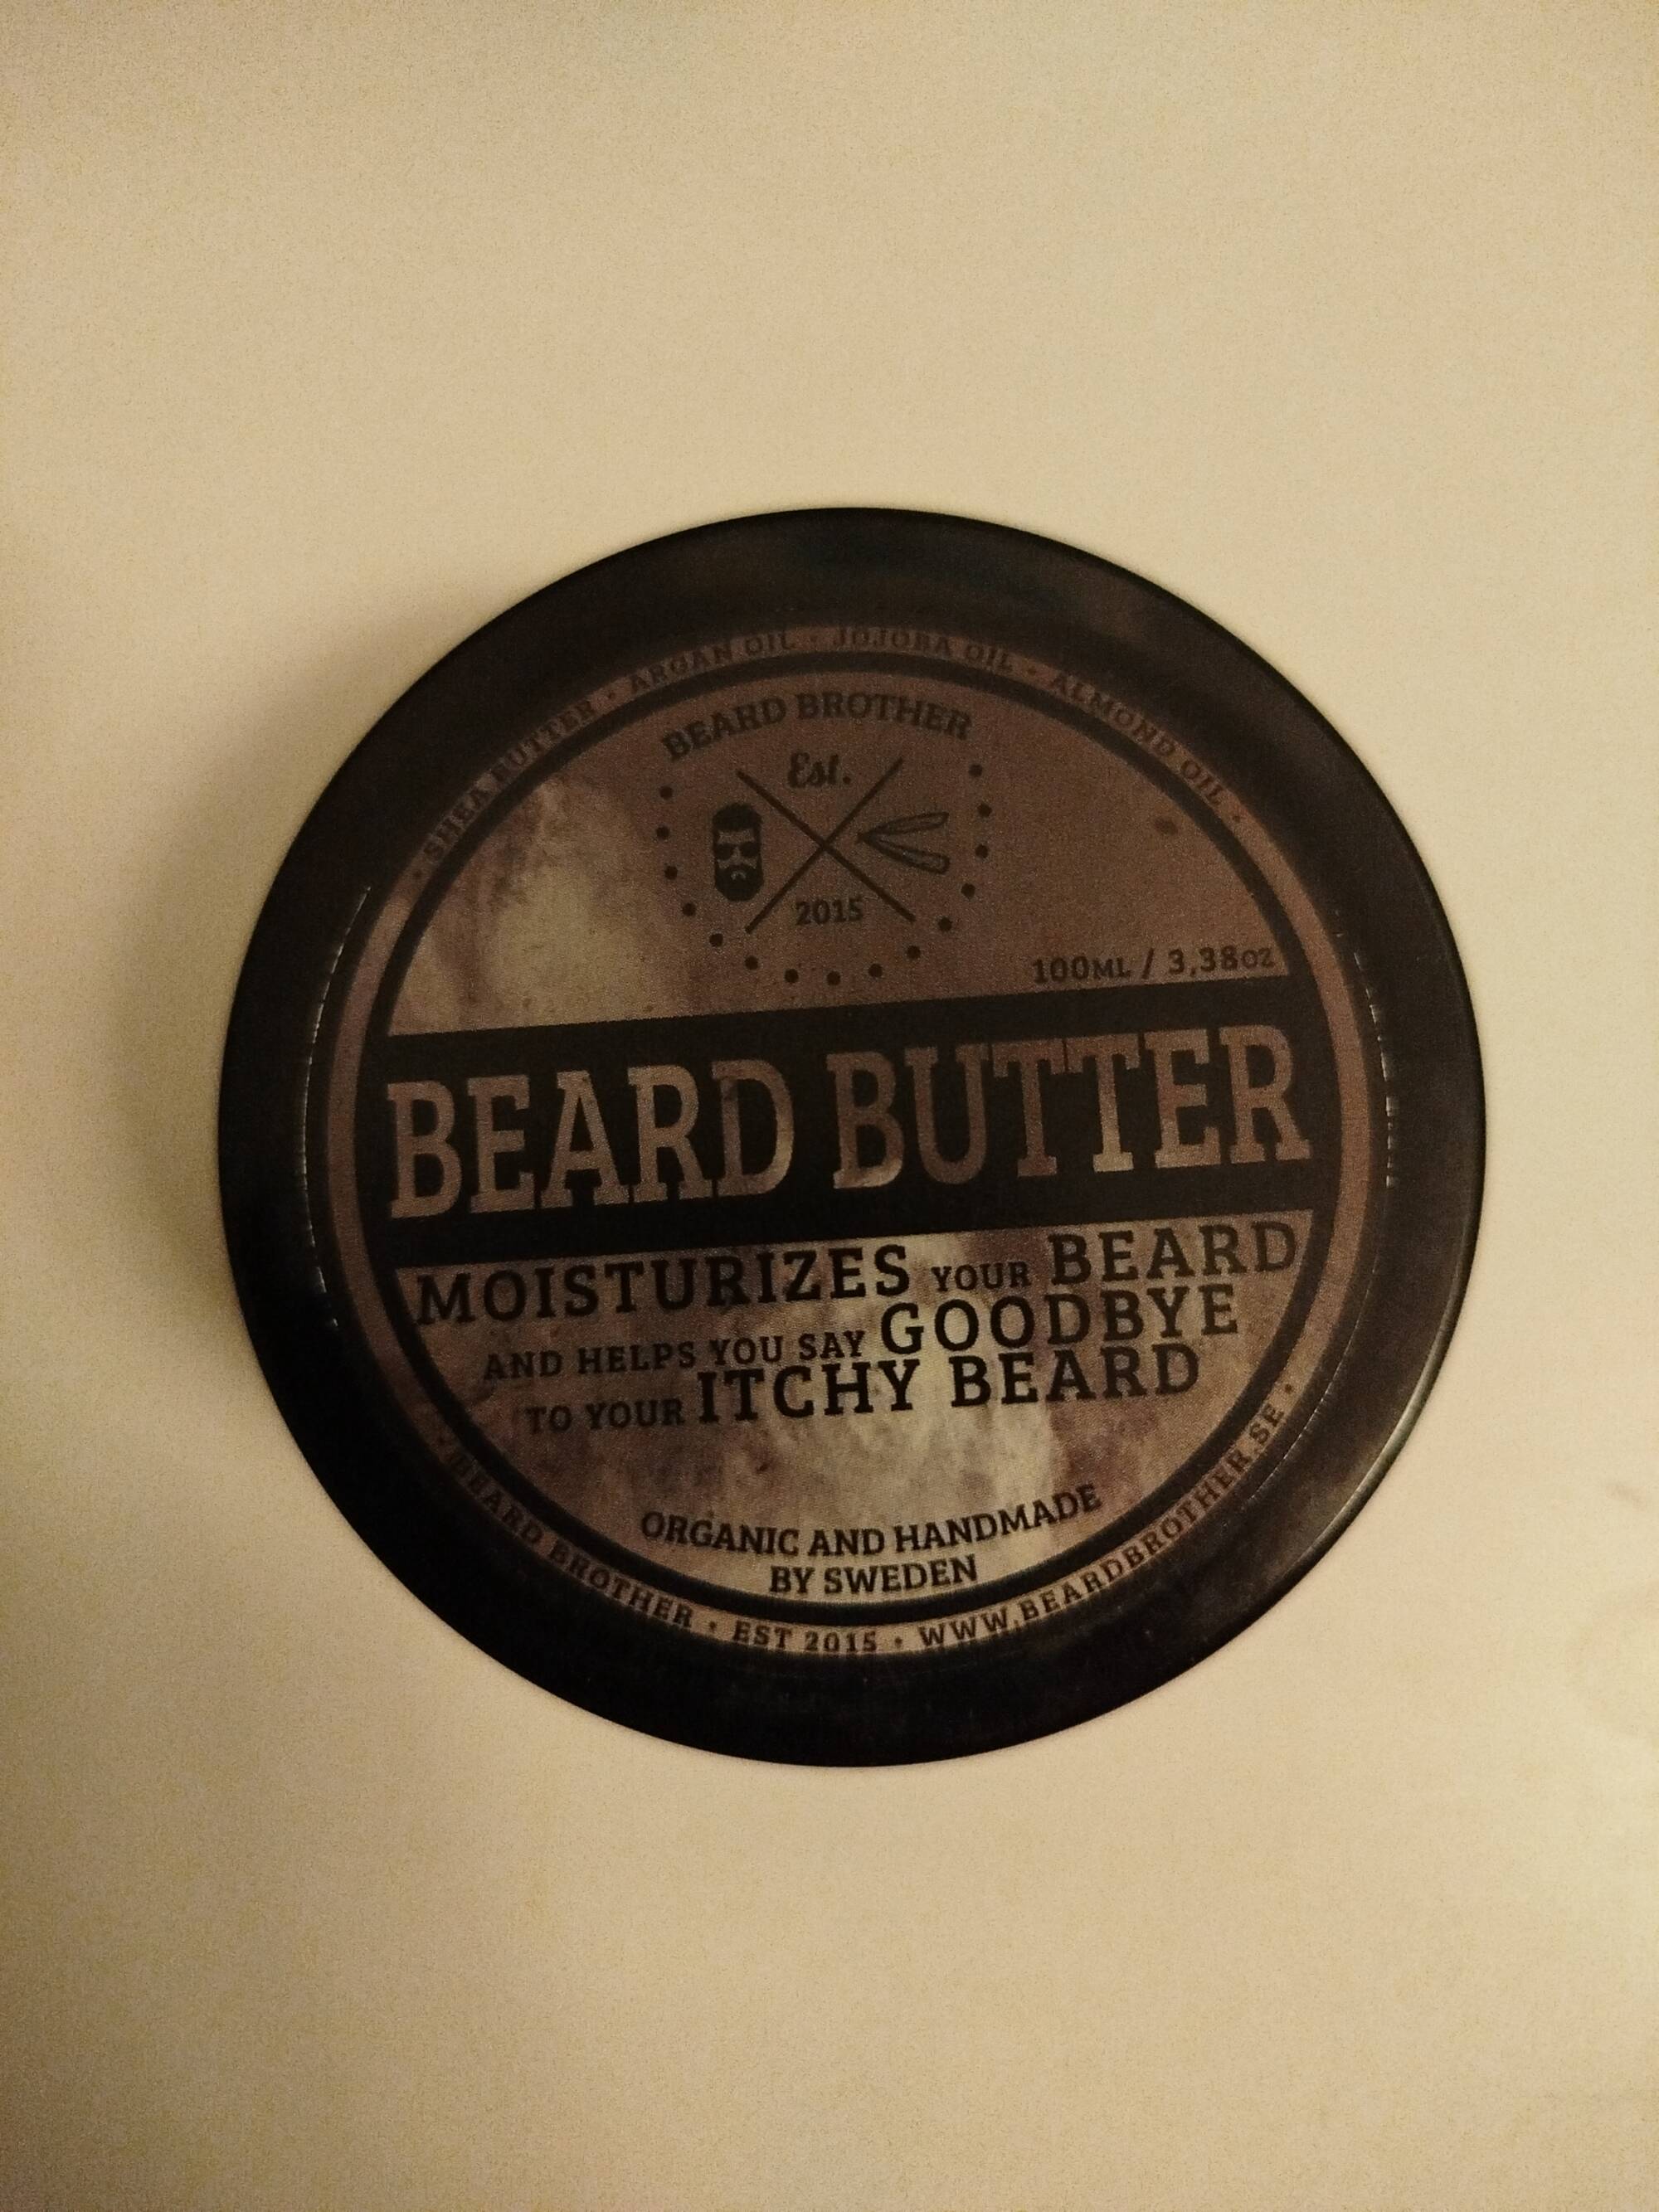 BEARD BROTHER - Beard butter